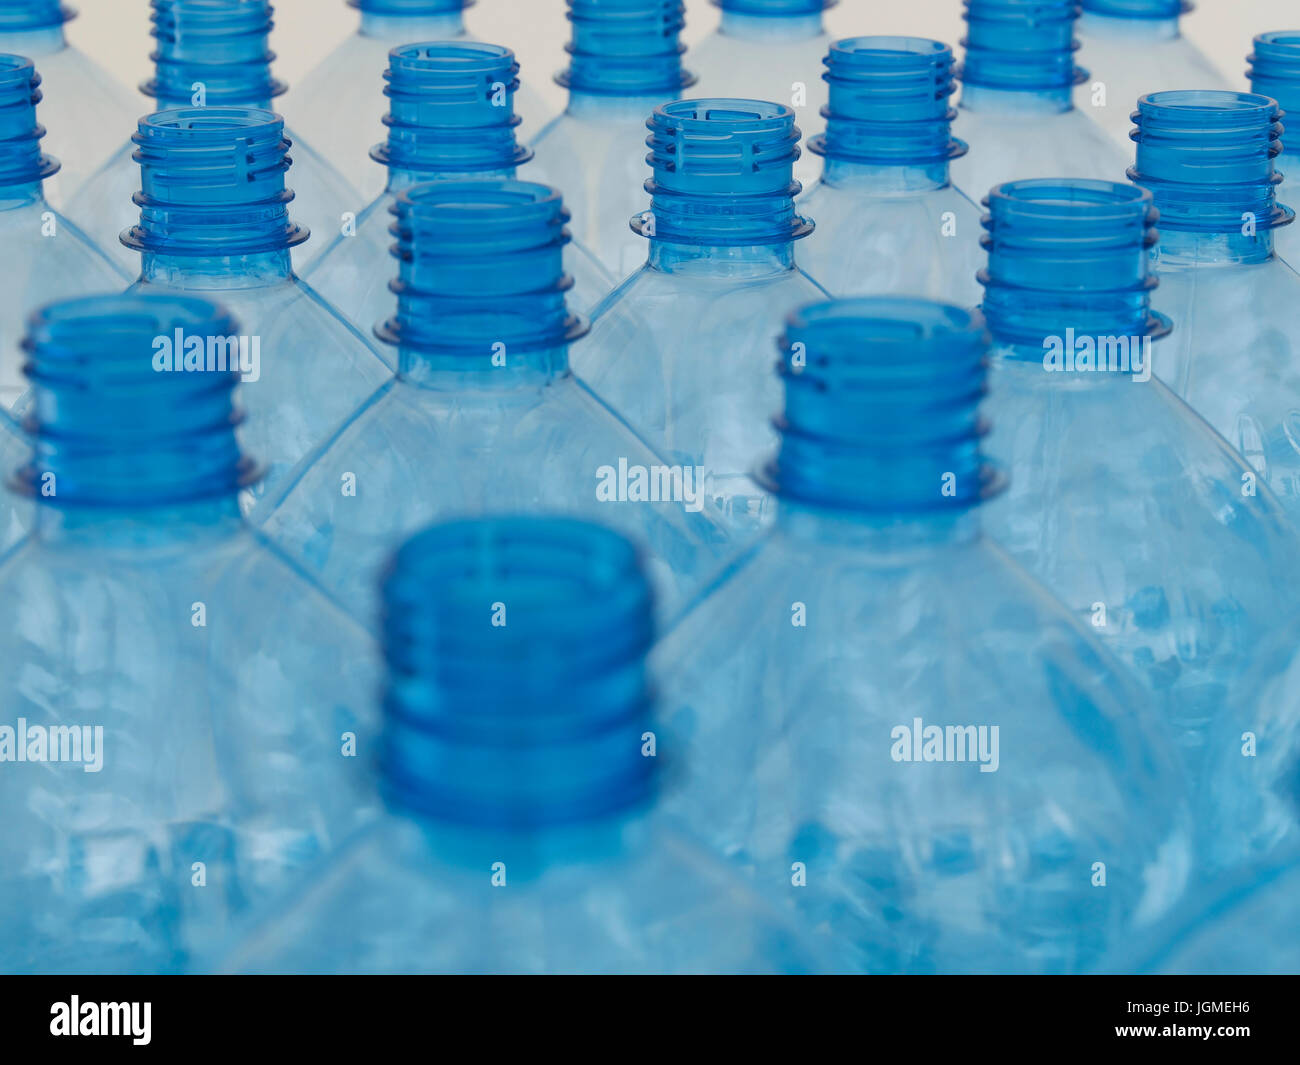 Svuotare le bottiglie di acqua - svuotare la bottiglia d'acqua, leere Wasserflaschen - svuotare la bottiglia di acqua Foto Stock